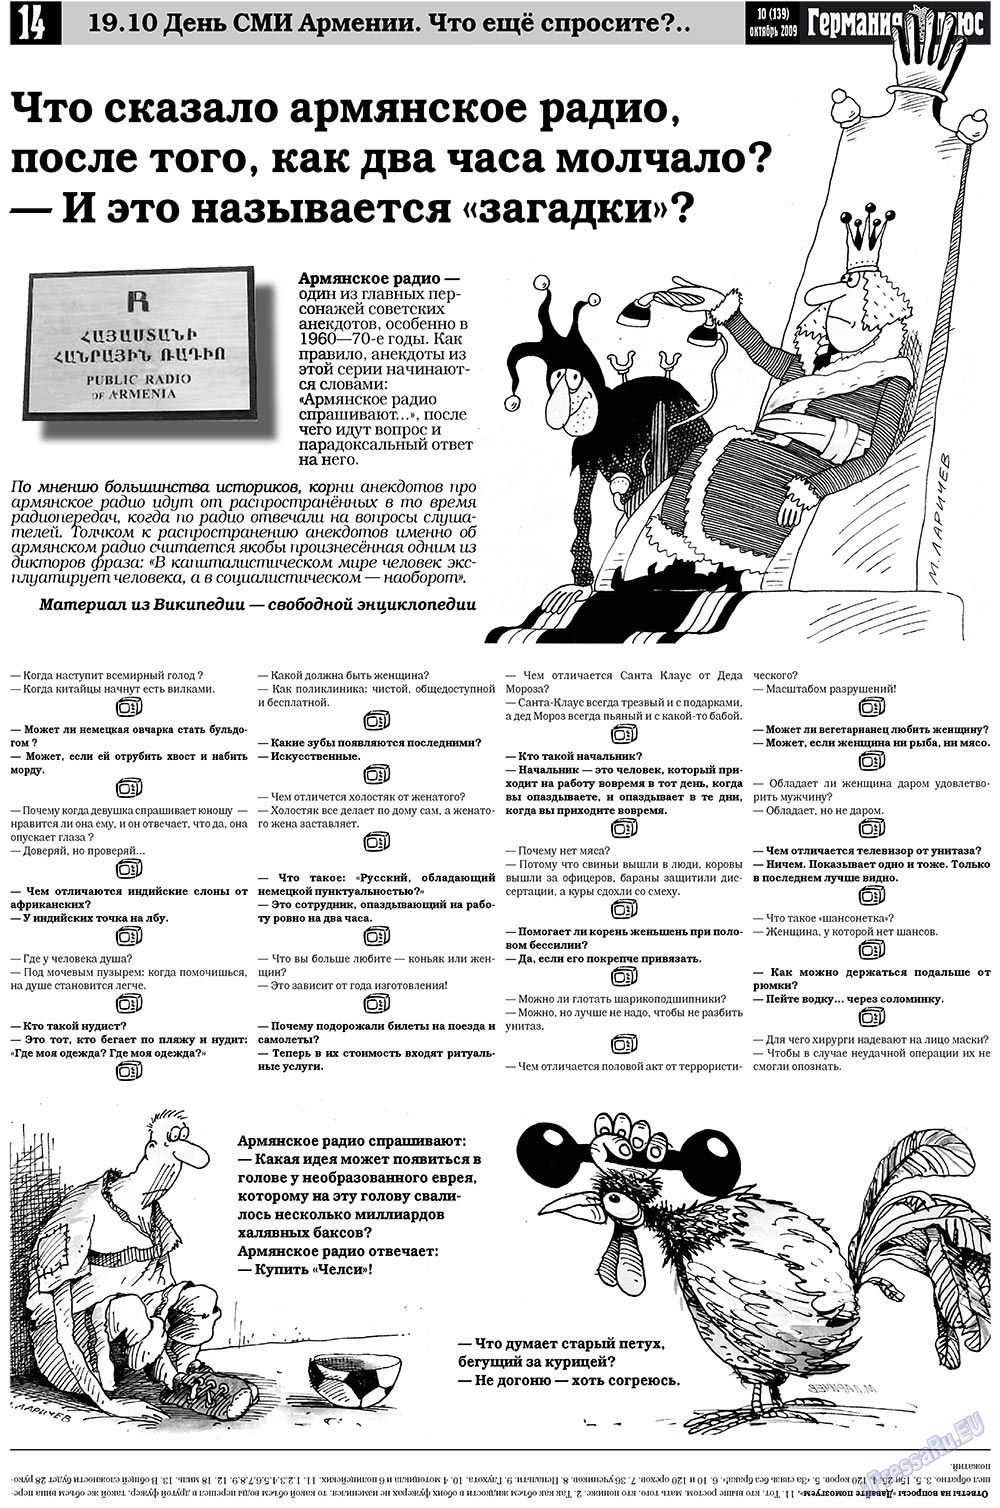 Германия плюс (газета). 2009 год, номер 10, стр. 14